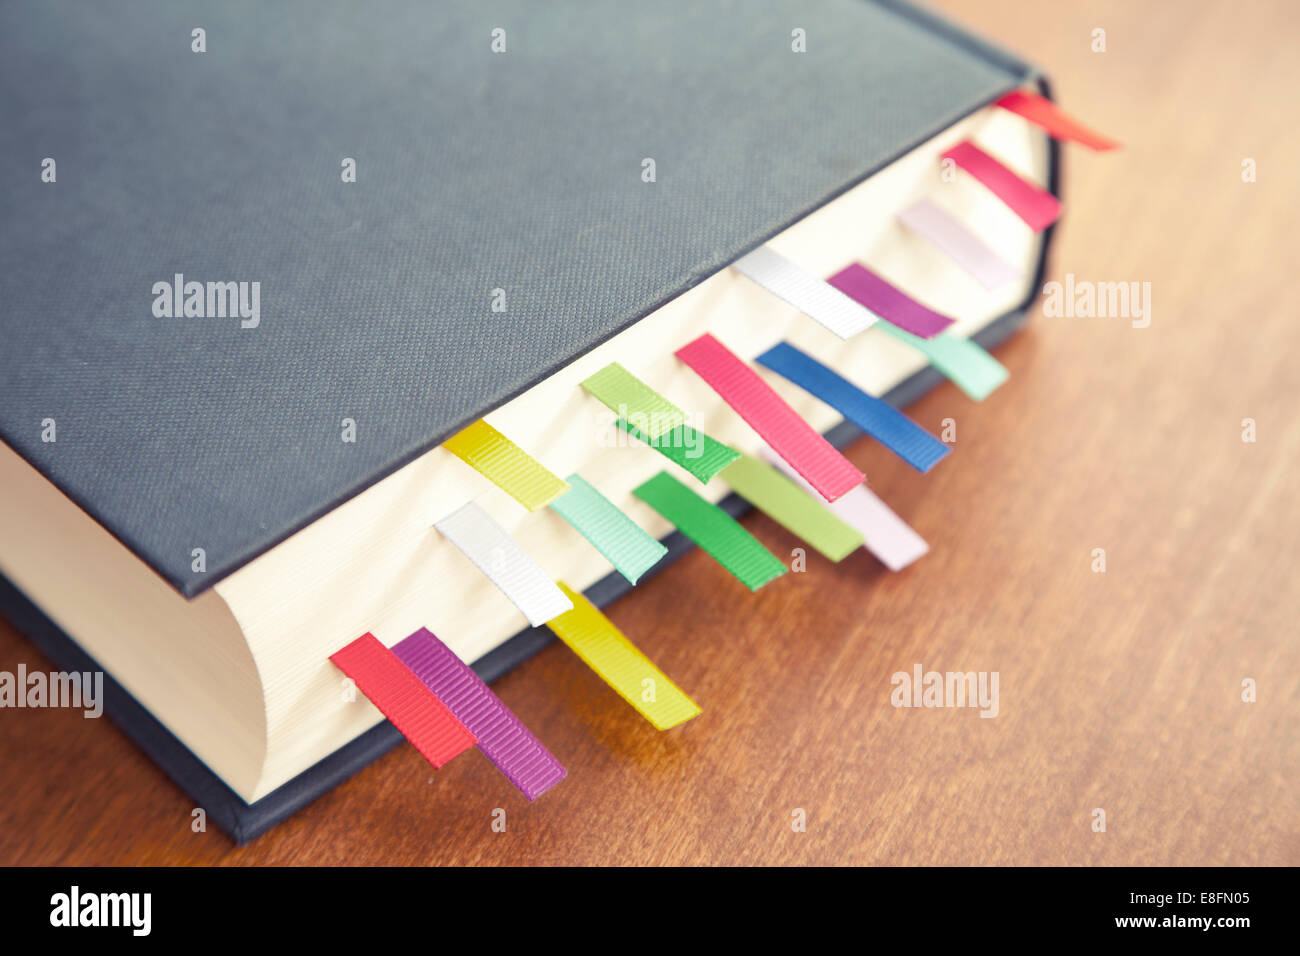 Primo piano di un libro hardback su un tavolo con segnalibri multicolore Foto Stock